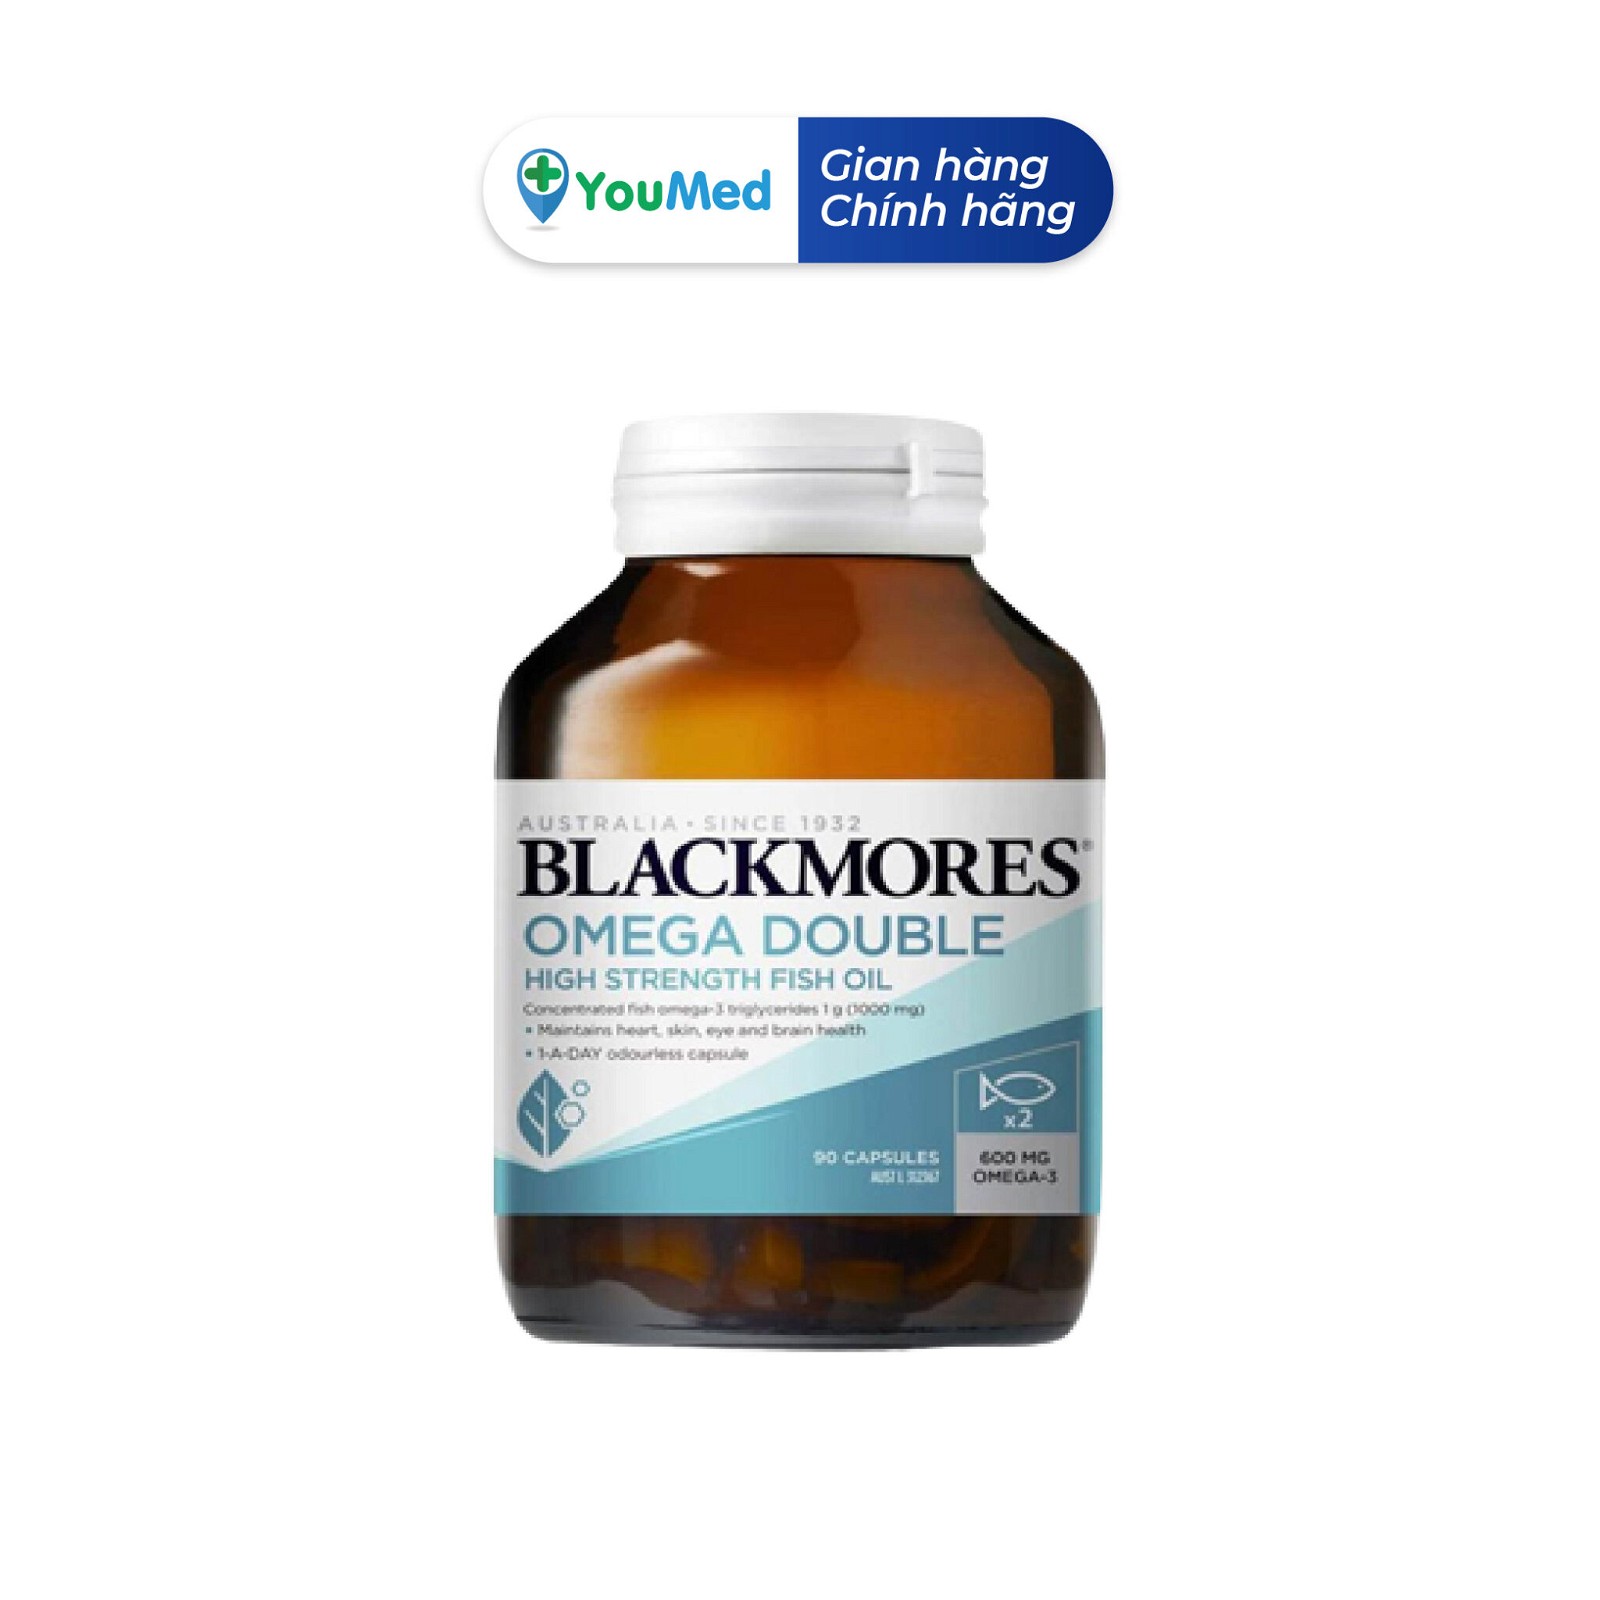 Blackmores Omega Fish Oil 1000 mg là một sản phẩm nổi tiếng đến từ Úc